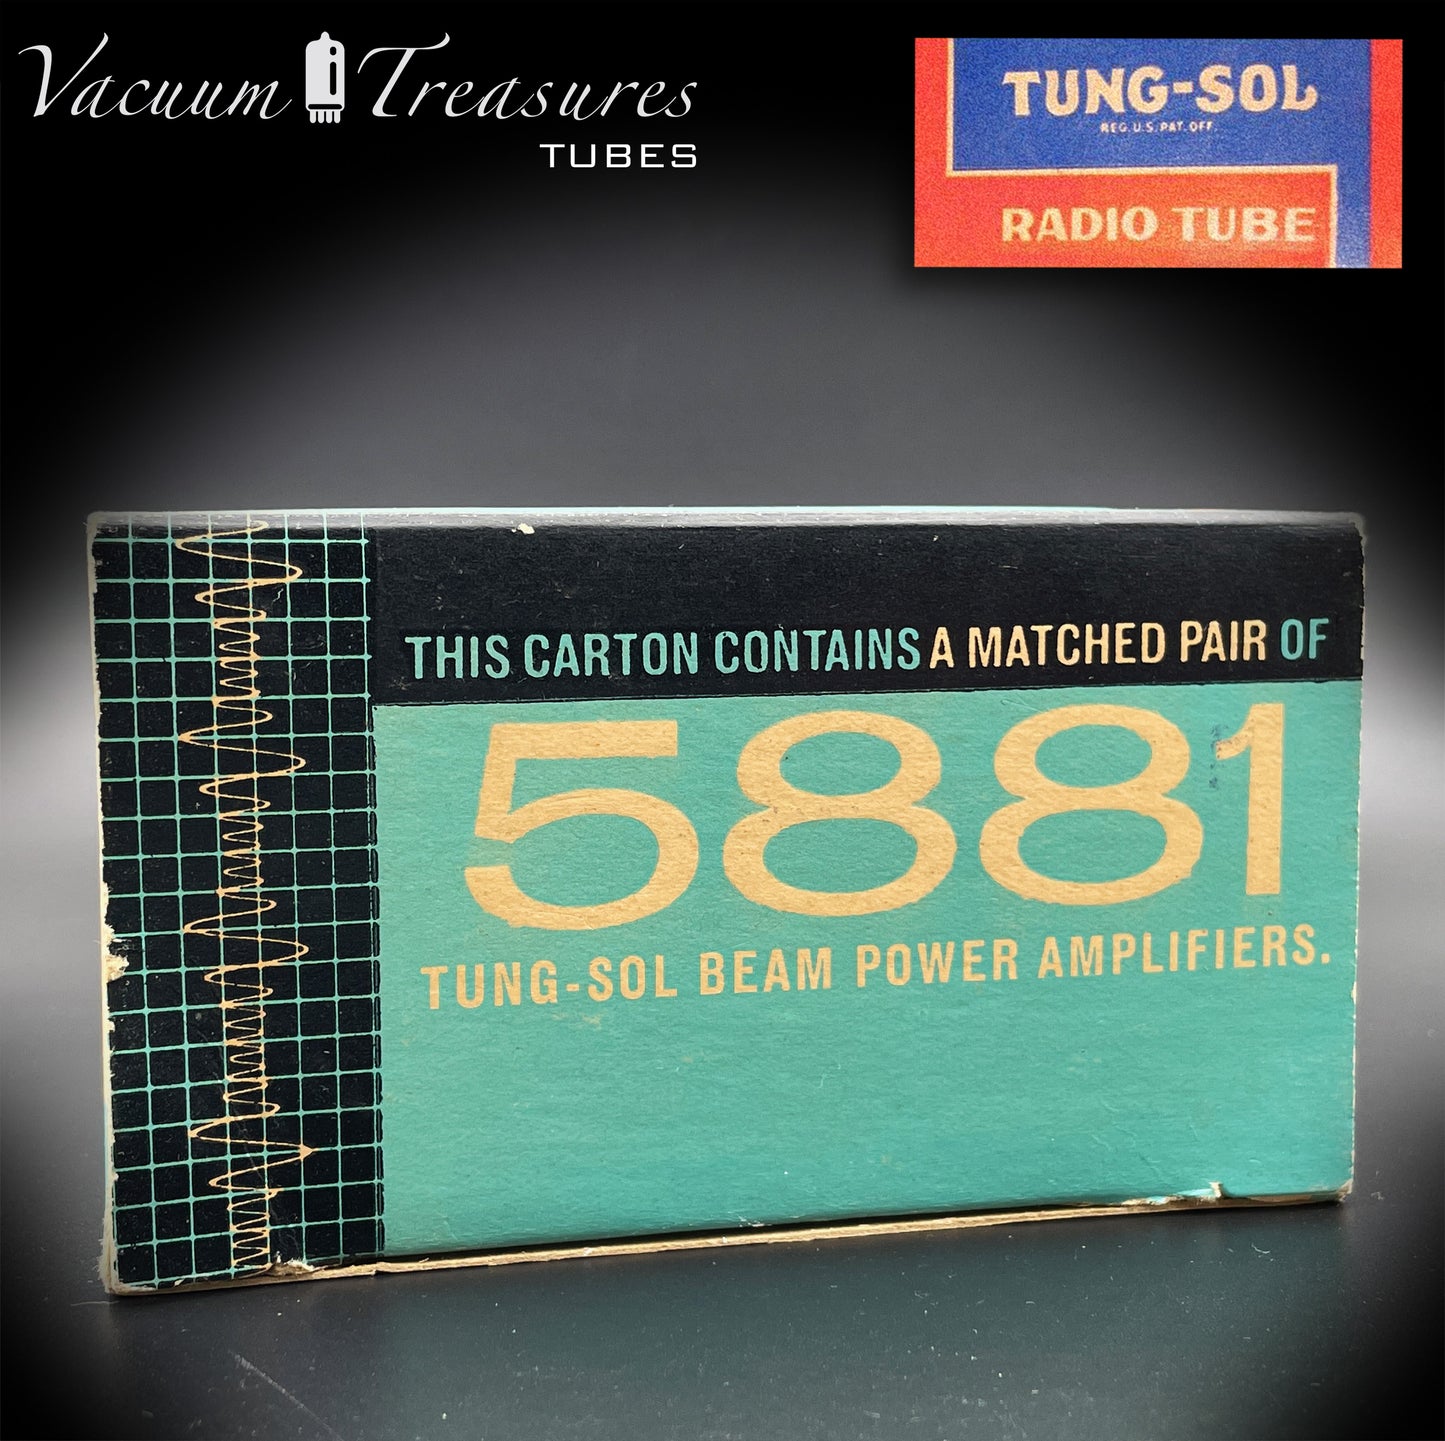 5881 (6L6WGB) TUNG-SOL NOS Braune Basis, passendes Paar Vakuumröhren, hergestellt in den USA